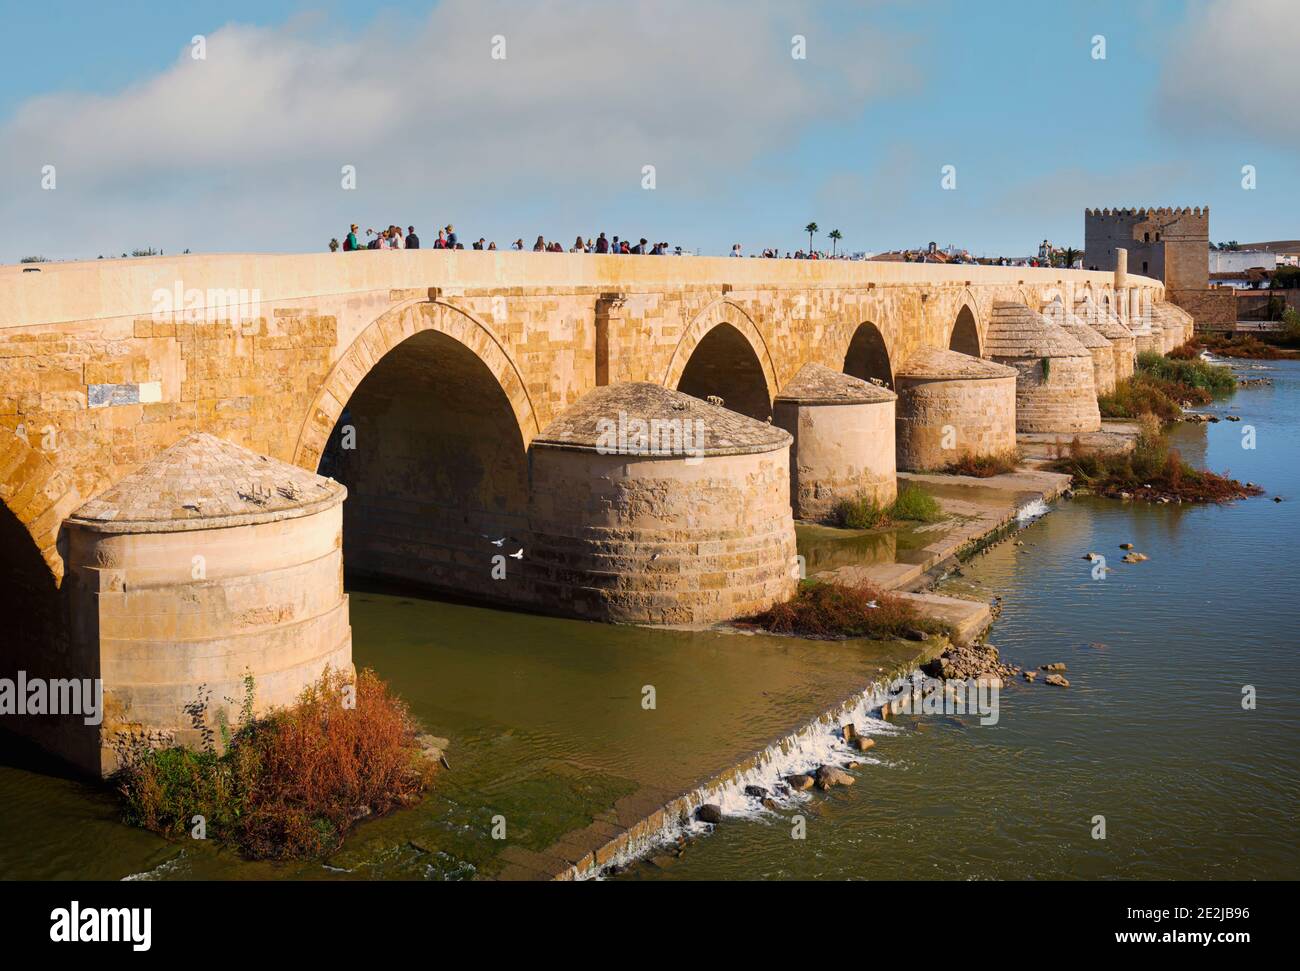 Il ponte romano sul fiume Guadalquivir. Le origini del ponte risalgono al i secolo a.C., a Cordova romana. È stato ricostruito seve Foto Stock